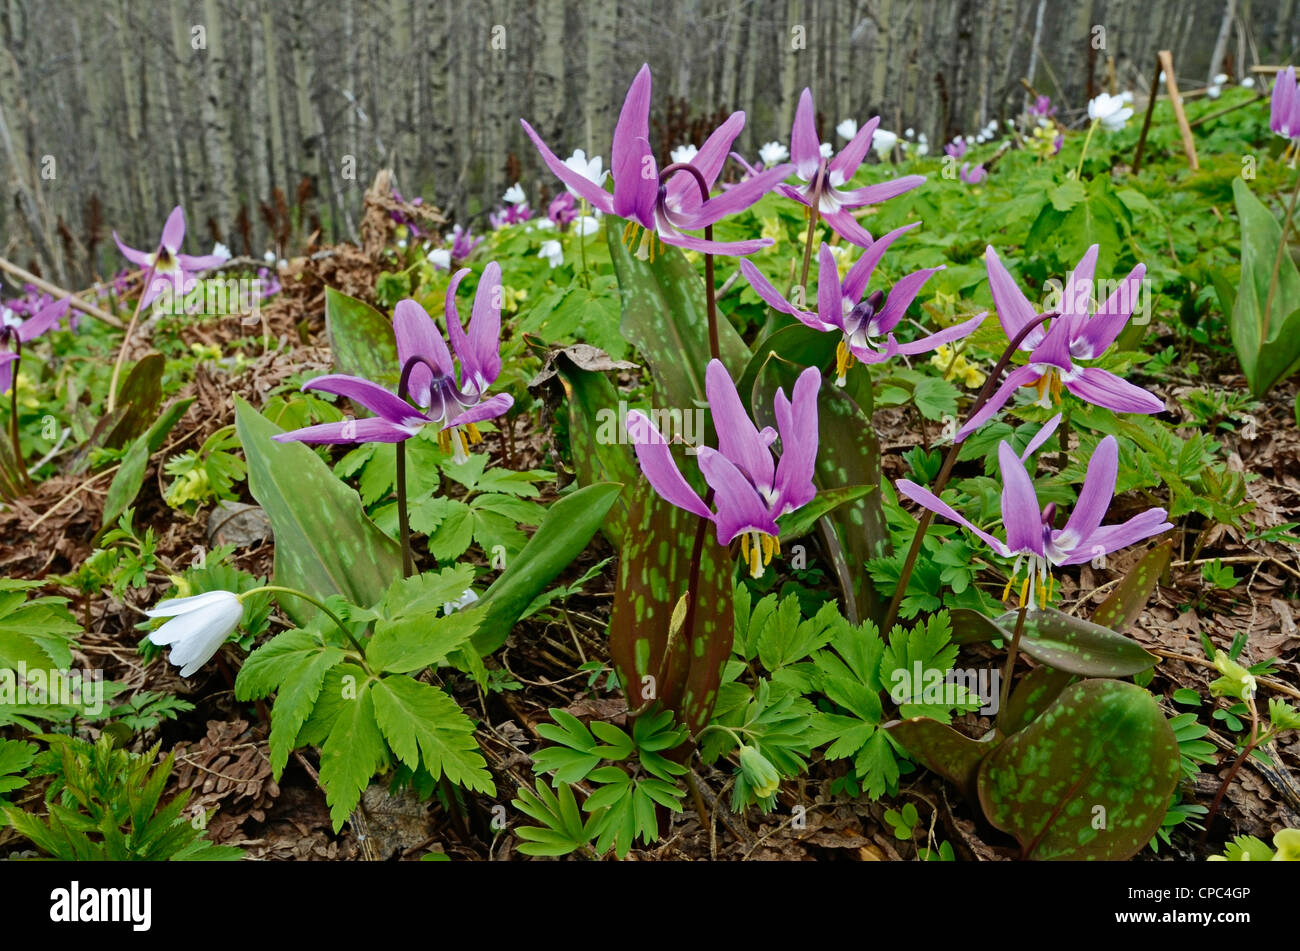 Wild Alpine Flowers Dens Canis Erythronium and Anemone altaica Altai krai Russia Siberia Stock Photo